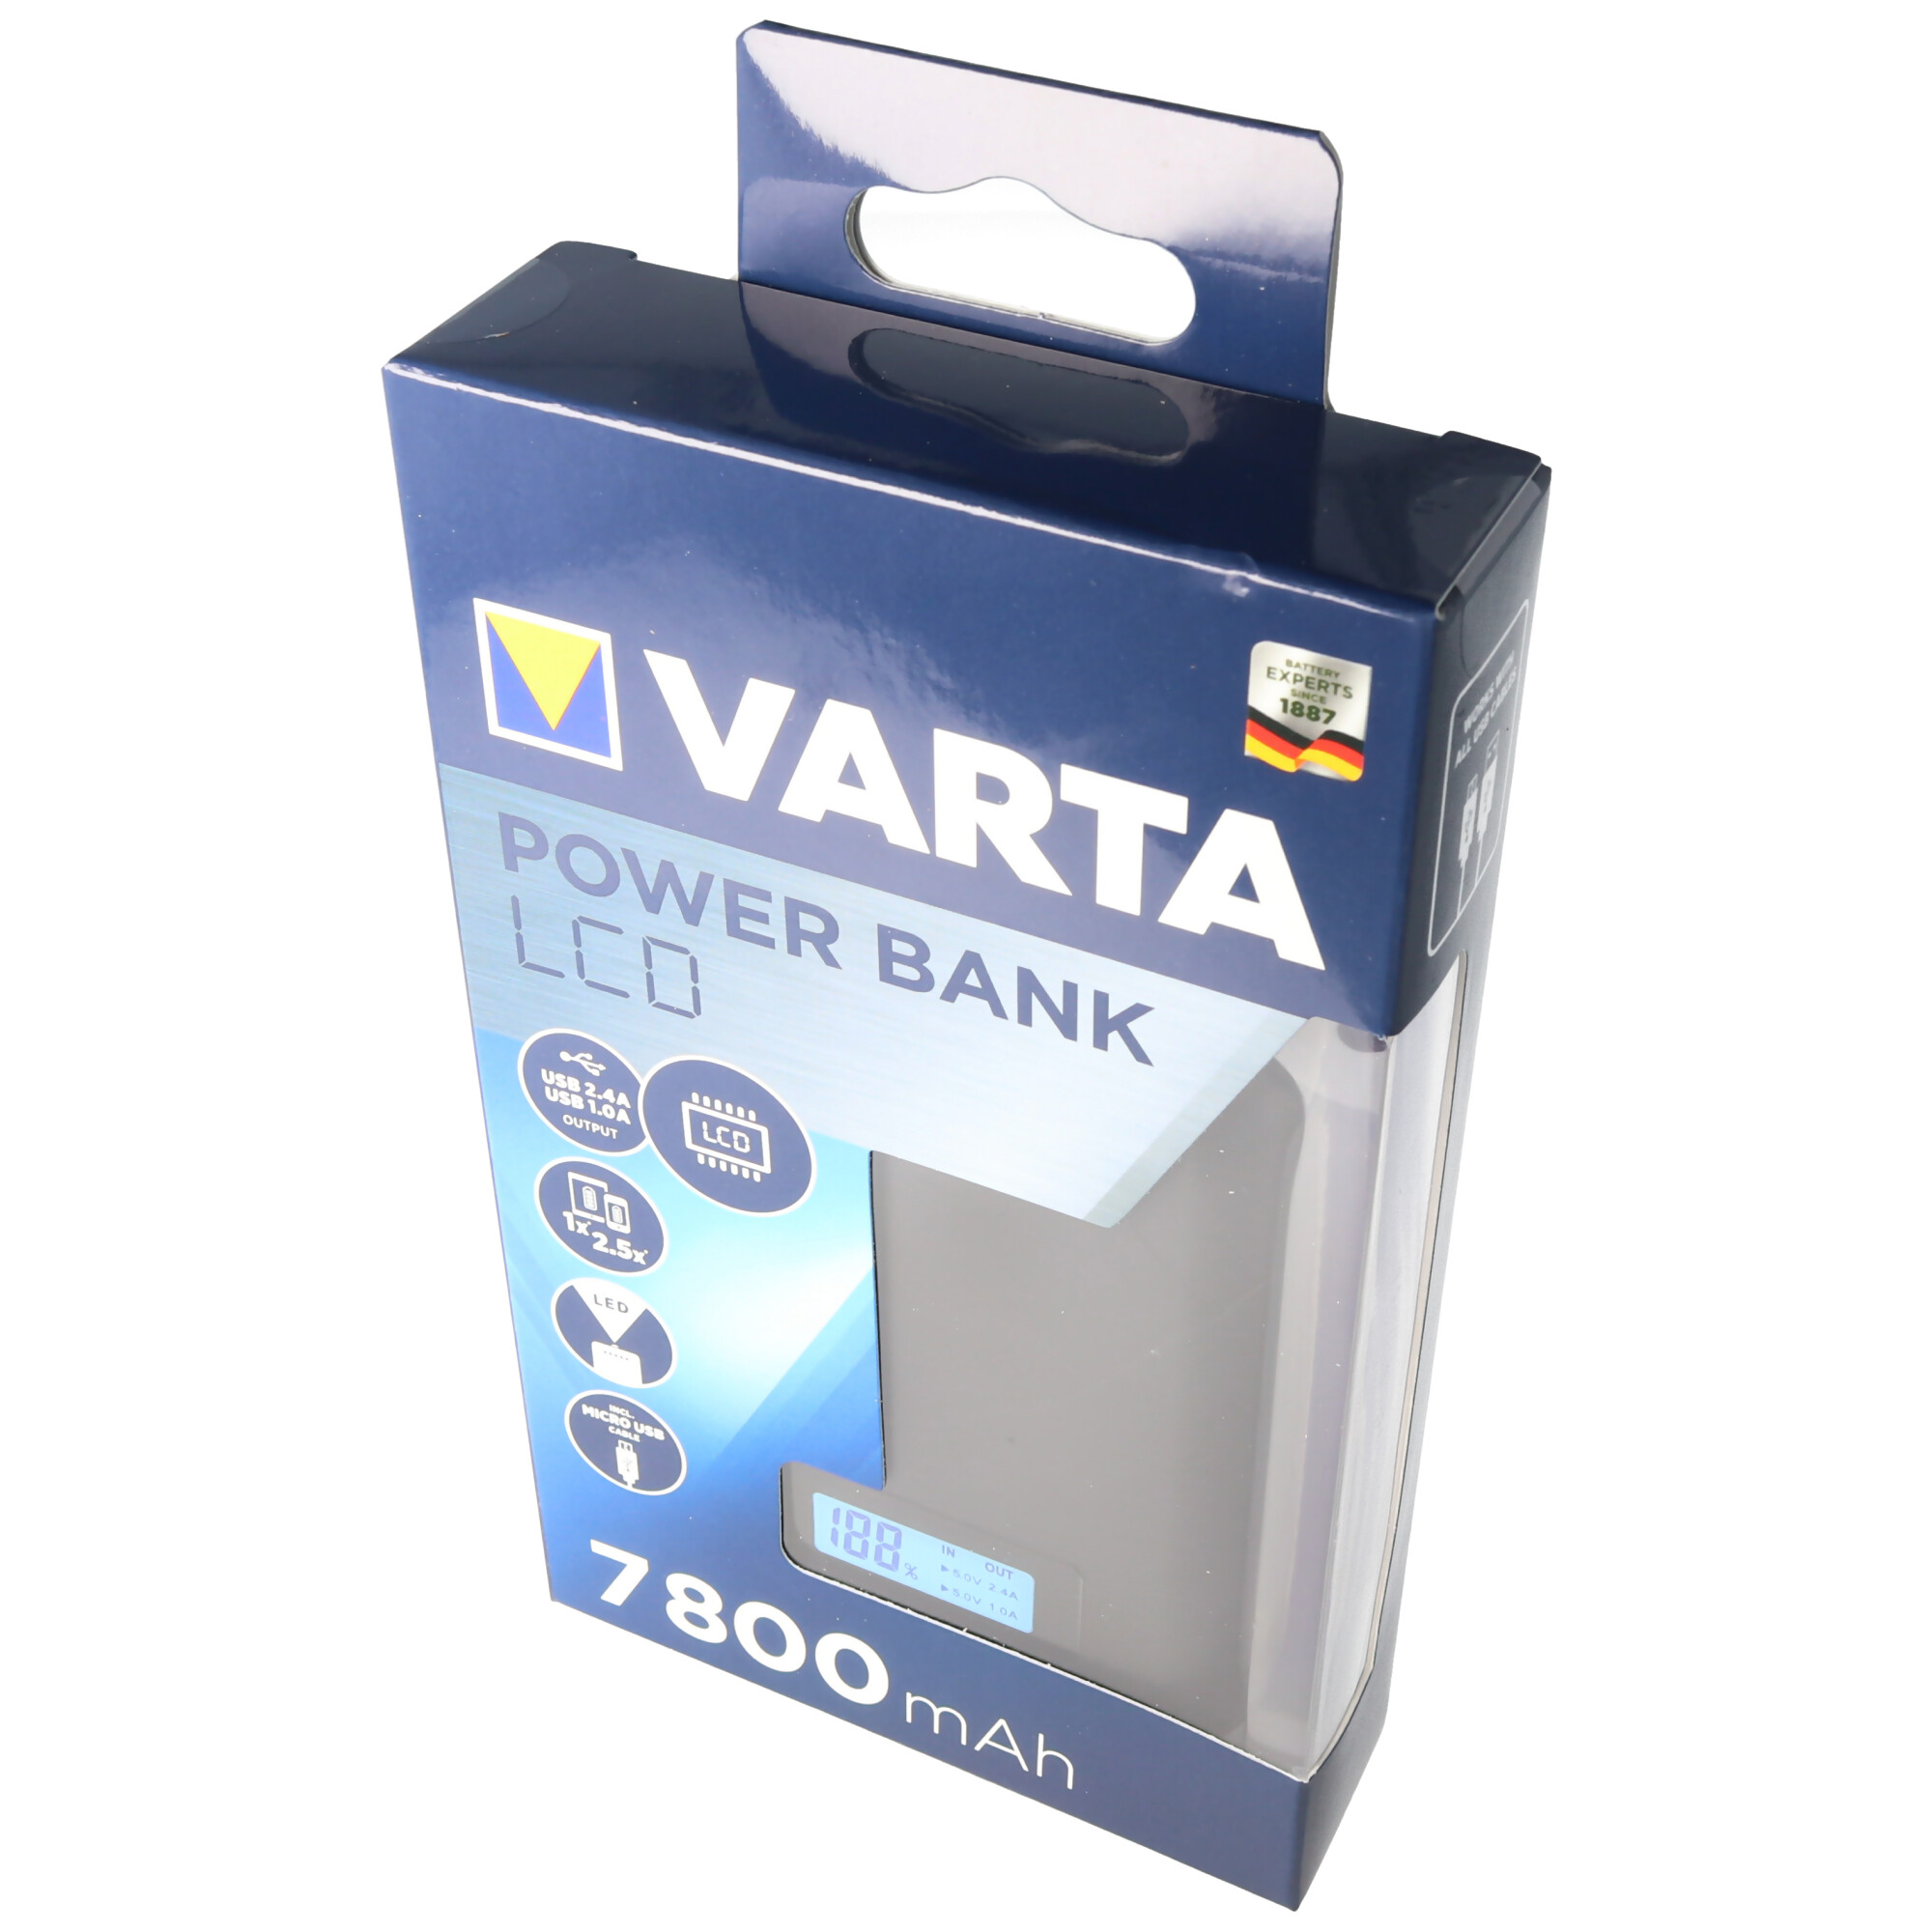 Varta Powerbank LCD 7800mAh Ladestrom max. 2,4A mit Micro USB Ladekabel und 2x USB Anschluss